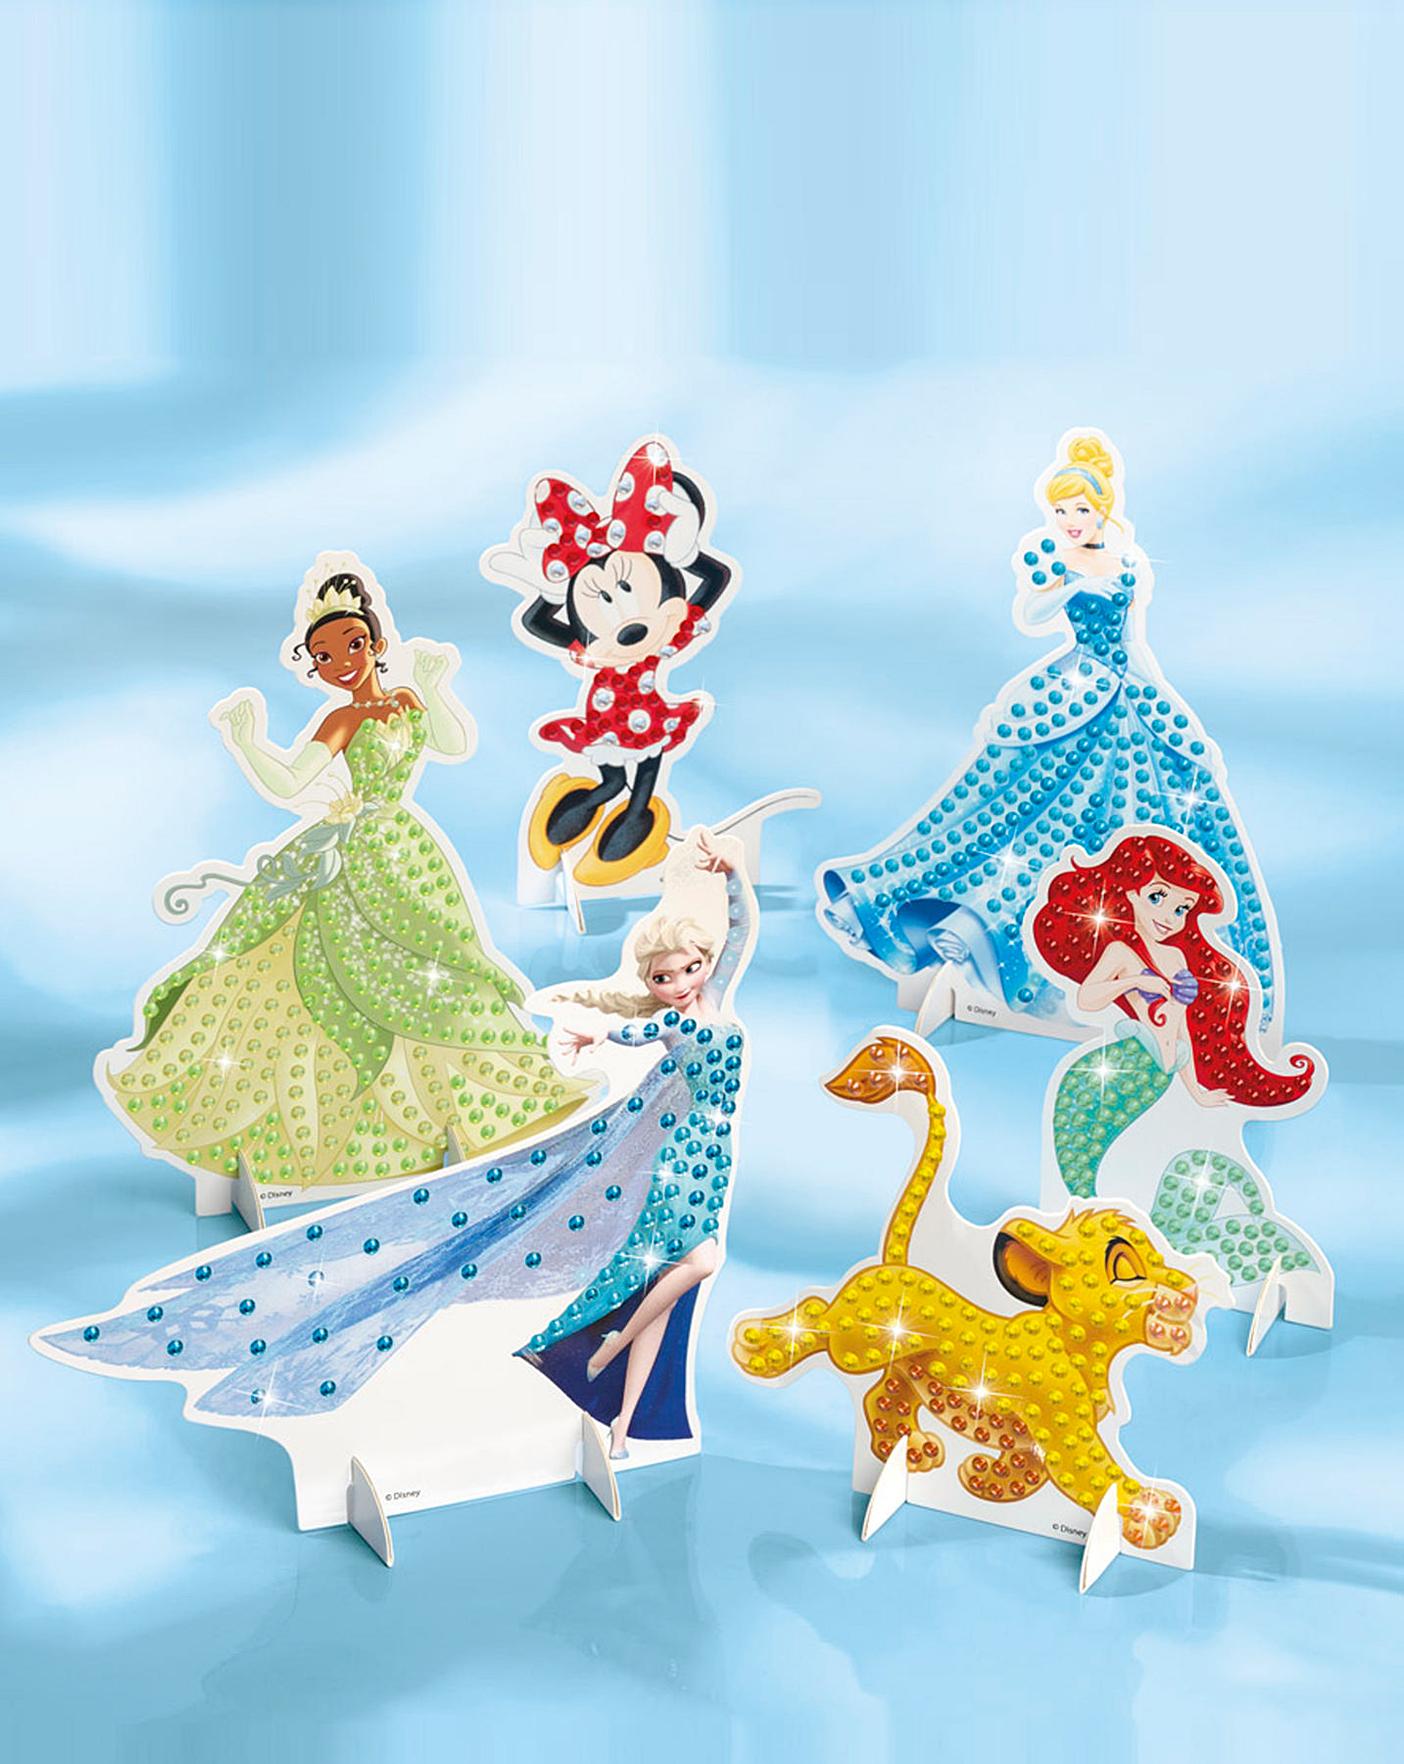 Totum Disney 100 - Sticker set